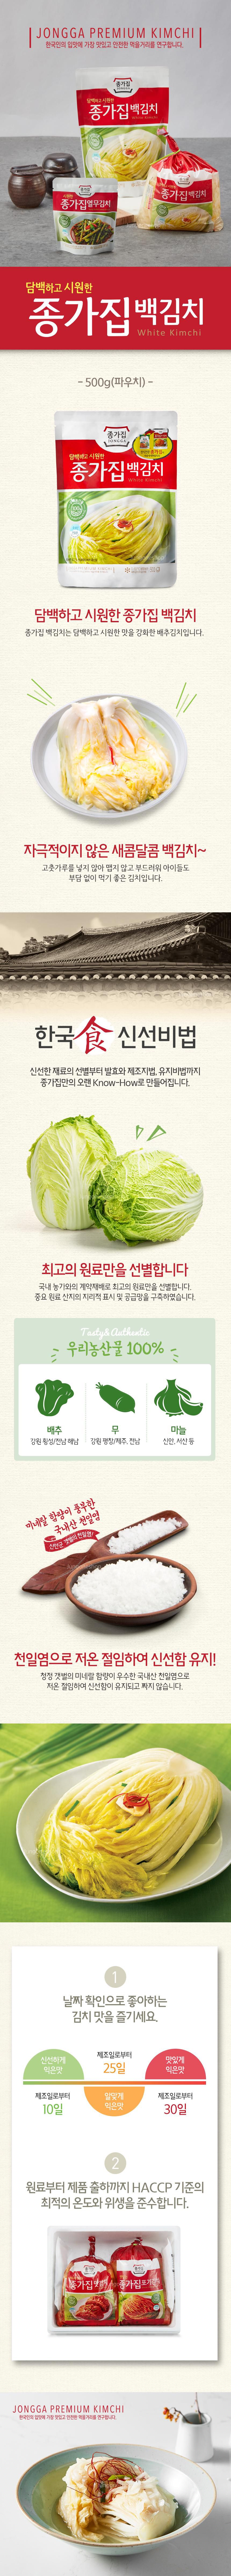 韓國食品-[Chongga] Baek Kimchi 500g